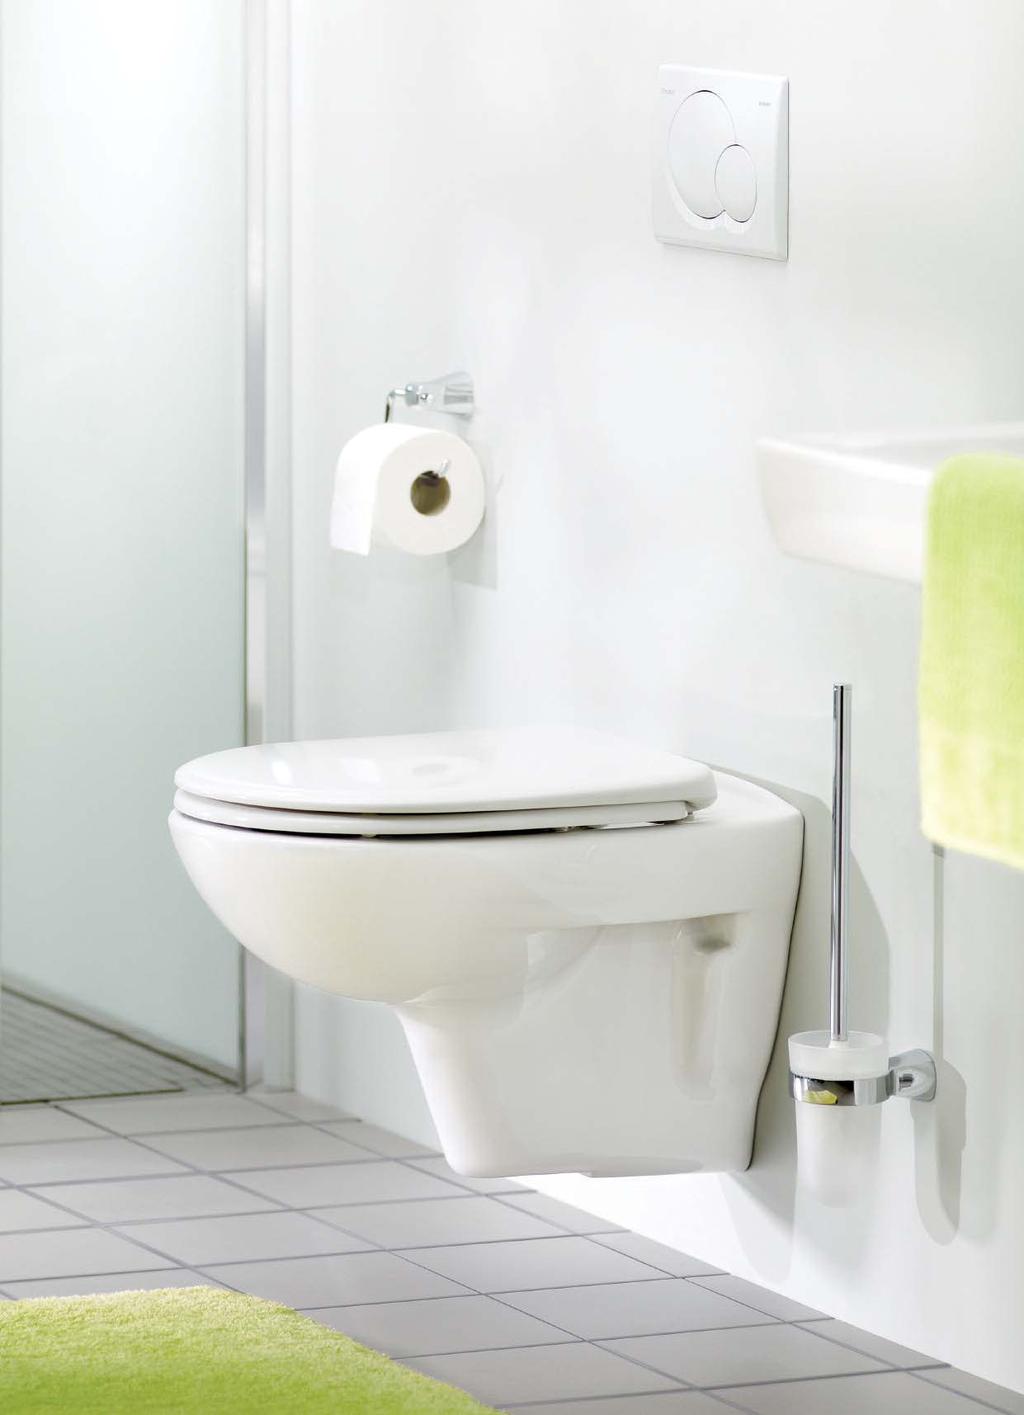 WC- und Urinal-Zubehör